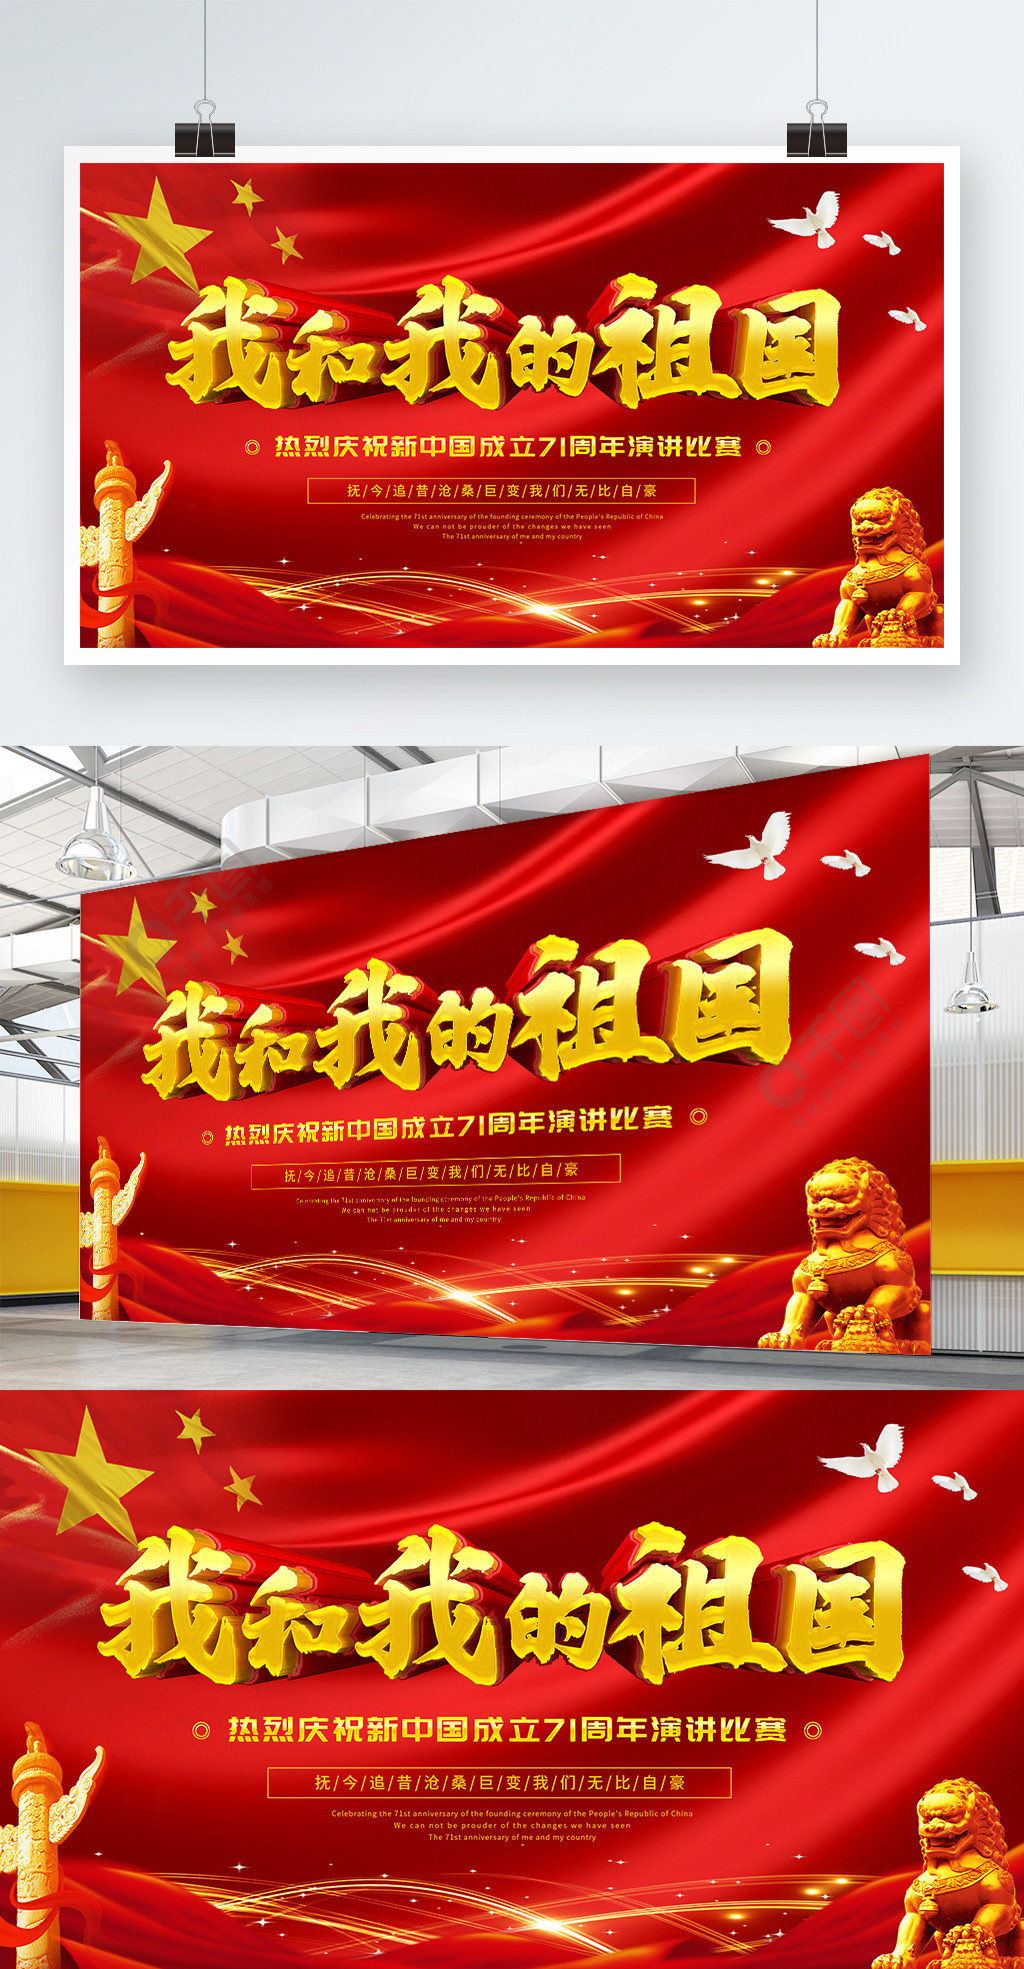 北京消费季推出“京彩端午”系列促消费活动